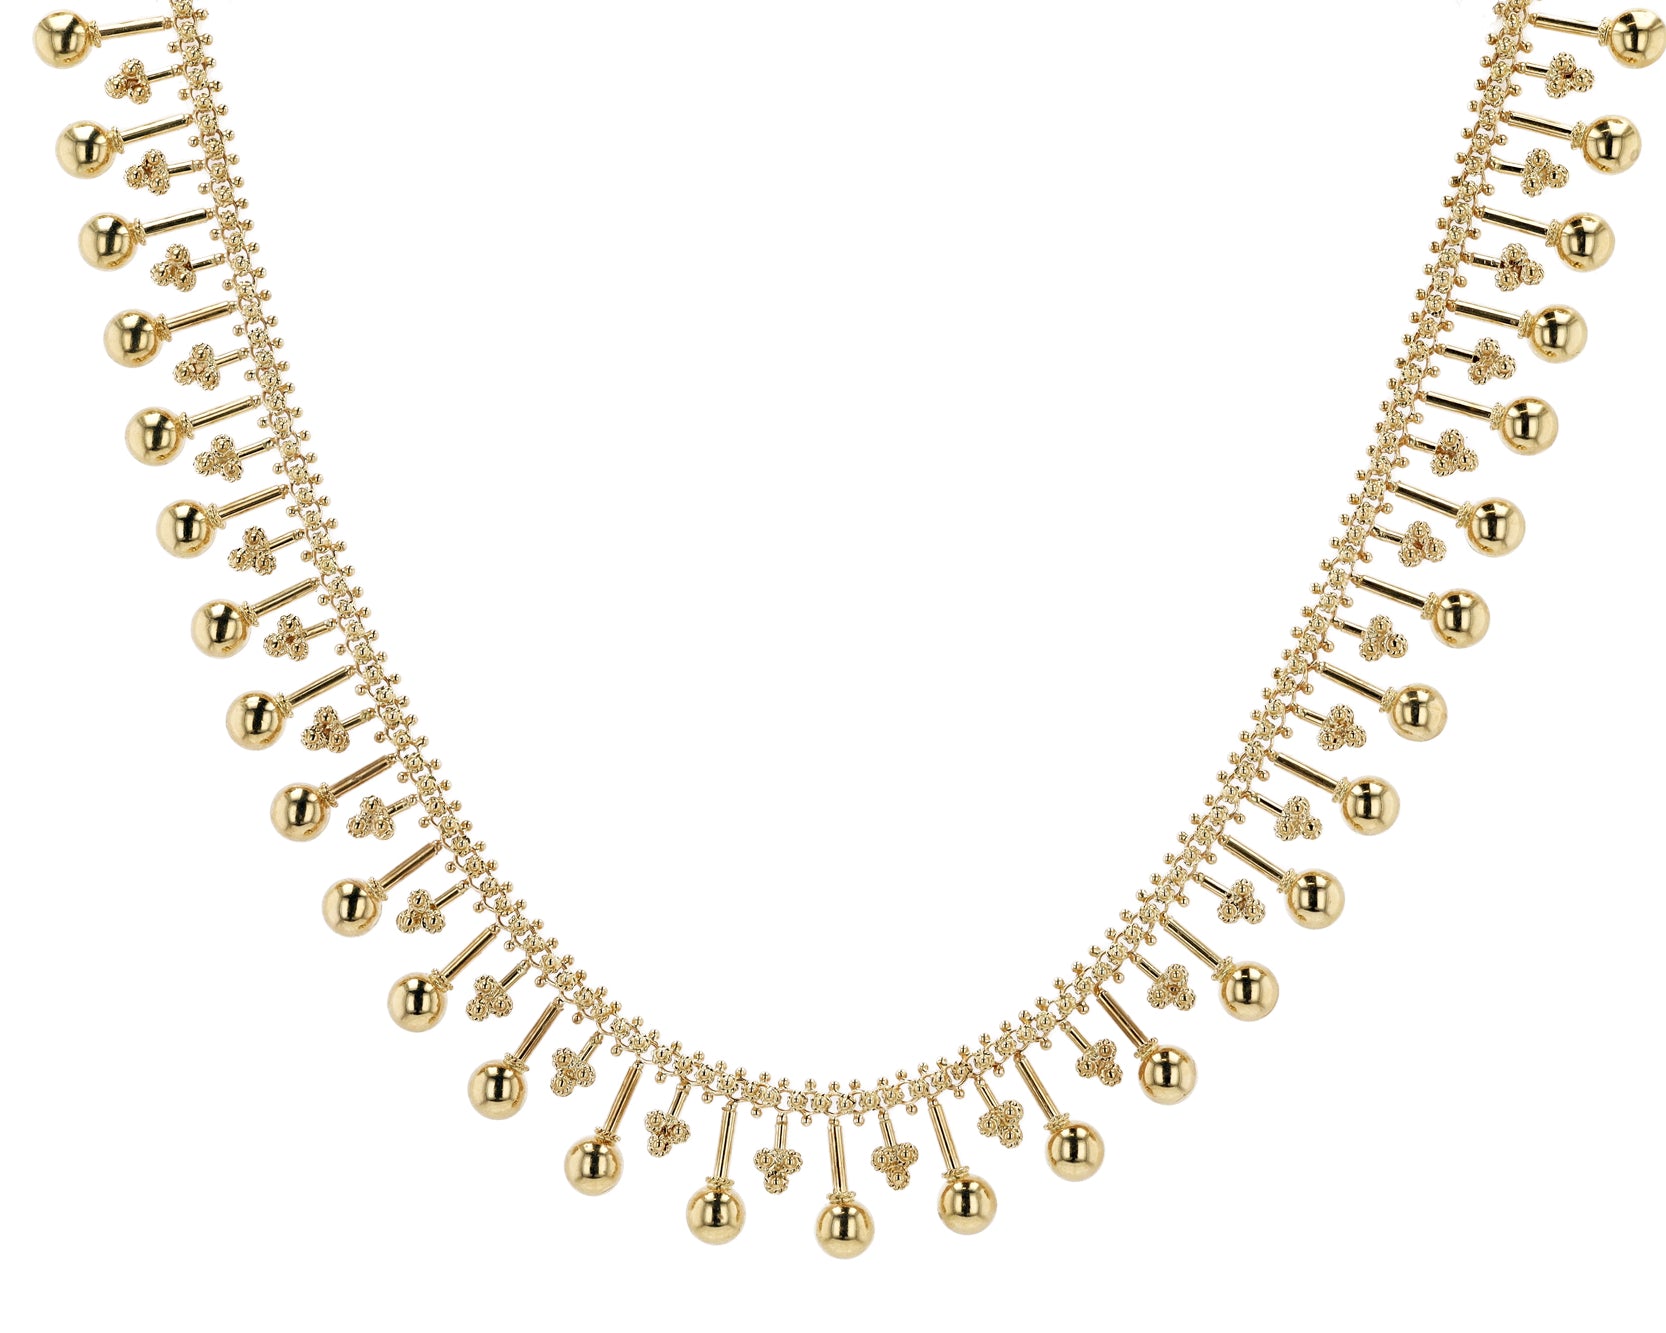 14k Gold Vintage Necklace